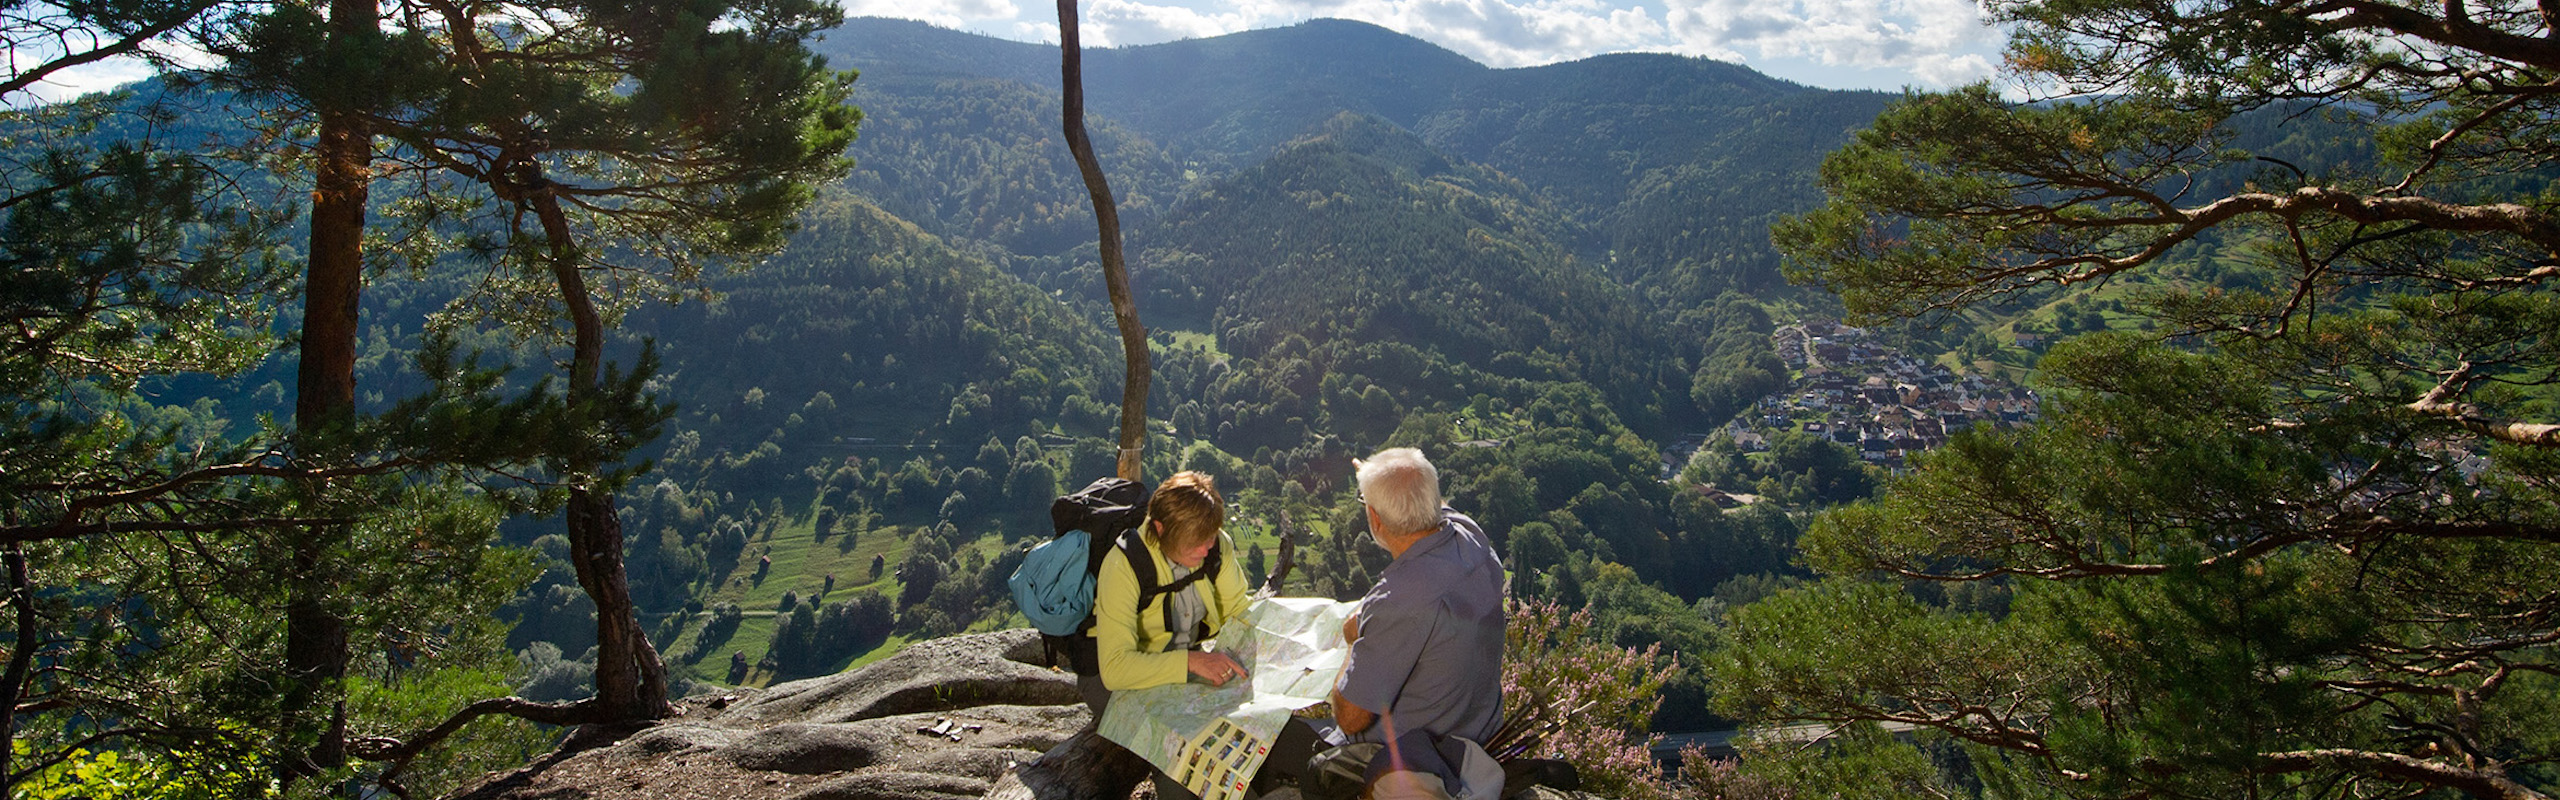 Zwei Wanderer machen eine Pause auf dem Füllefelsen im Murgtal und genießen die traumhafte Aussicht